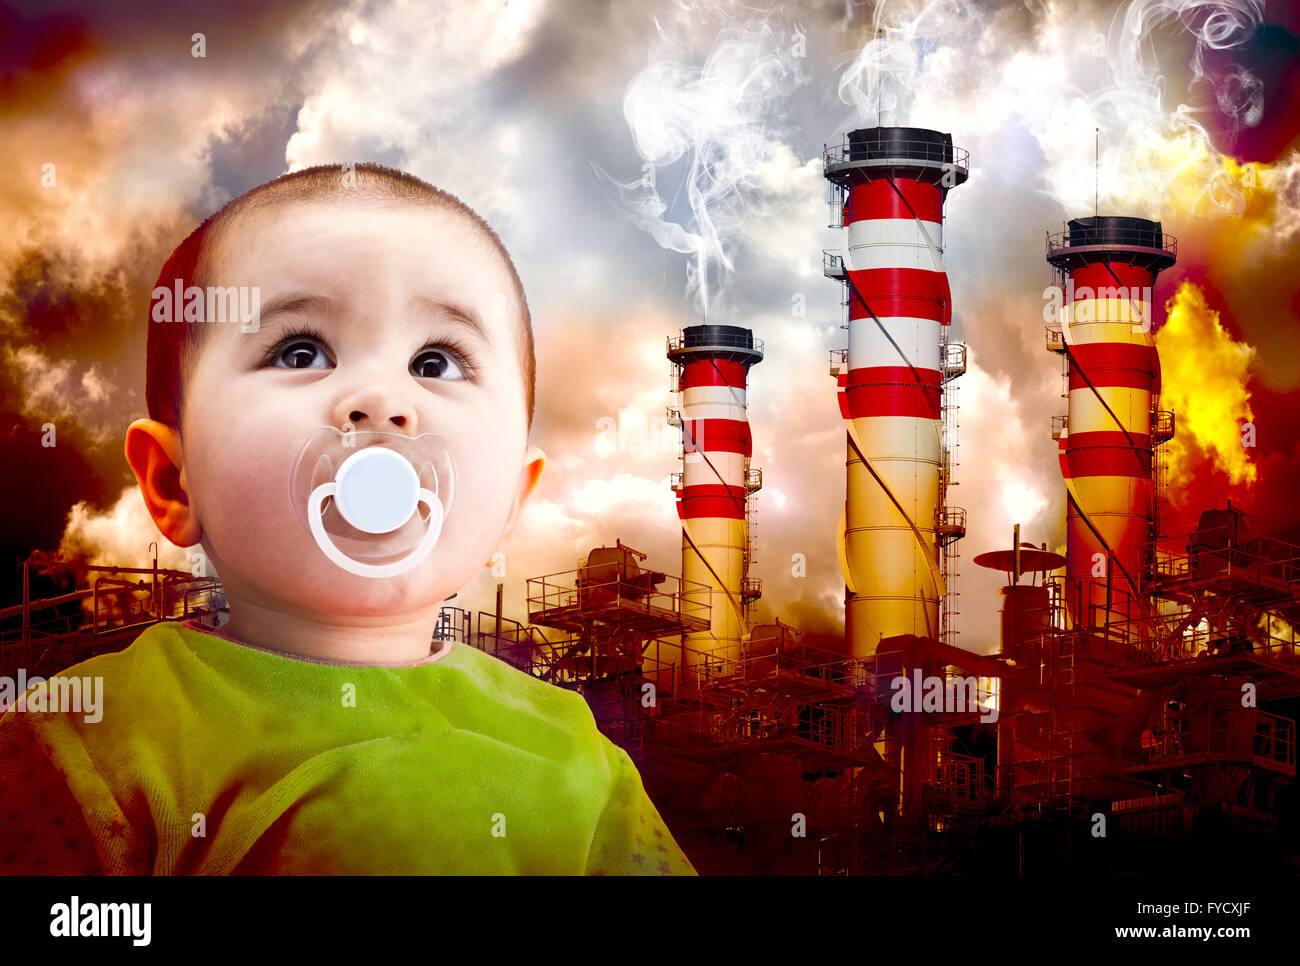 Un réchauffement de la photo avec un enfant de regarder le ciel. Les industries de paysage avec le feu et les gaz toxiques Banque D'Images